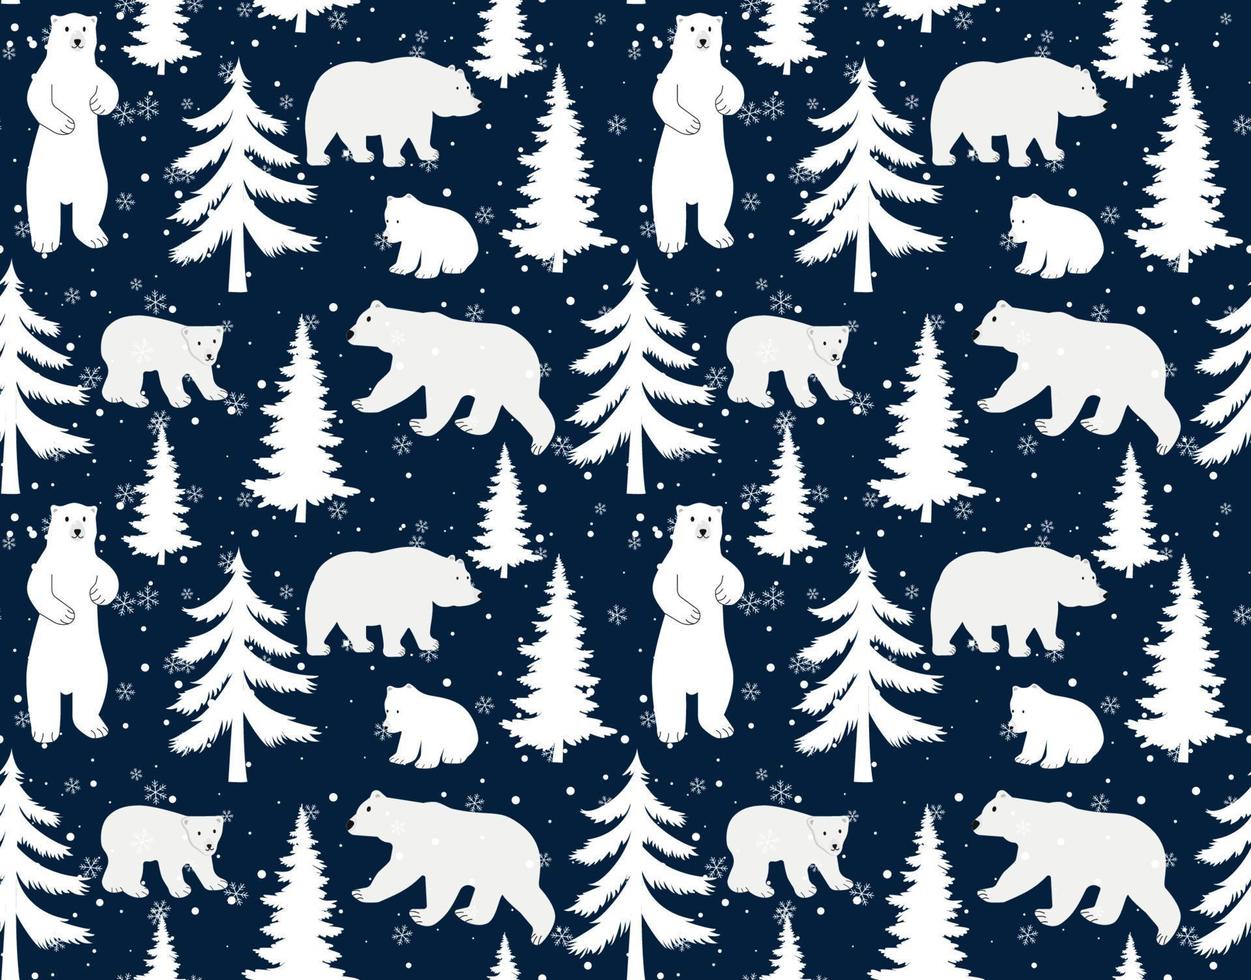 patrón vectorial sin inconvenientes con lindos osos polares dibujados a mano, pinos y bosques nevados de invierno sobre fondo azul oscuro. perfecto para el diseño textil, de papel tapiz o de impresión. vector